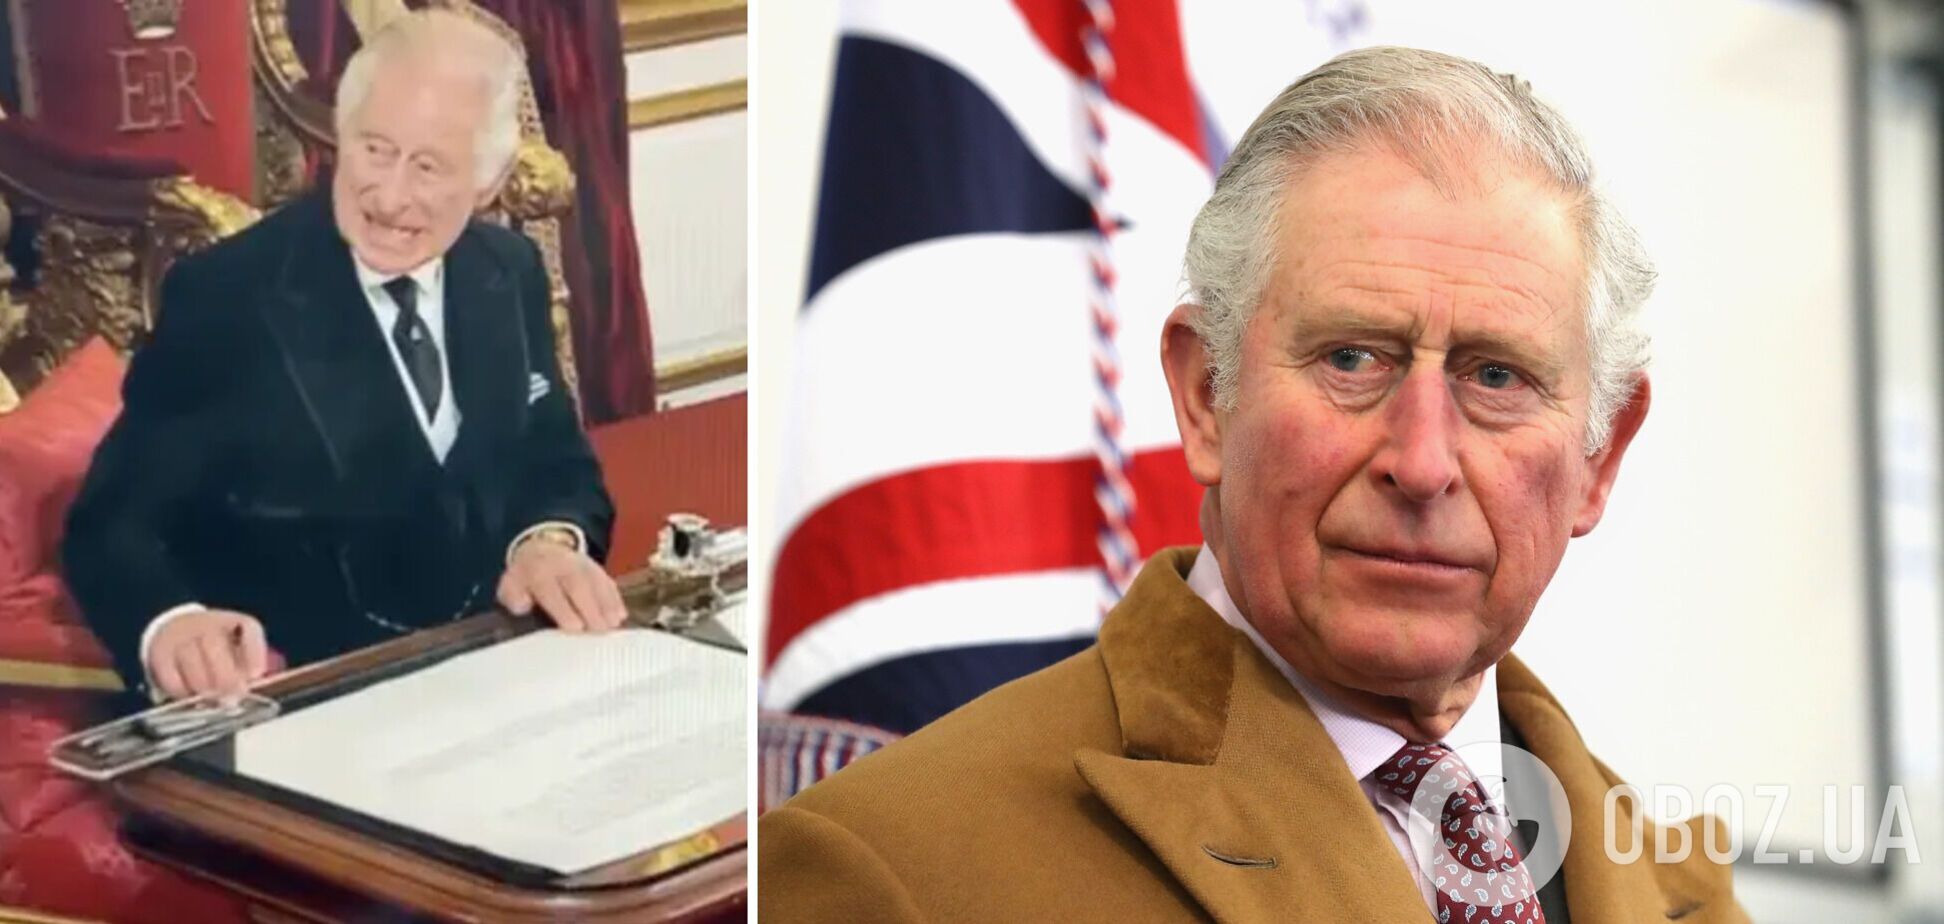 У мережі обговорюють незадоволене обличчя Чарльза ІІІ у день проголошення королем: мімікою попросив забрати зайве зі столу